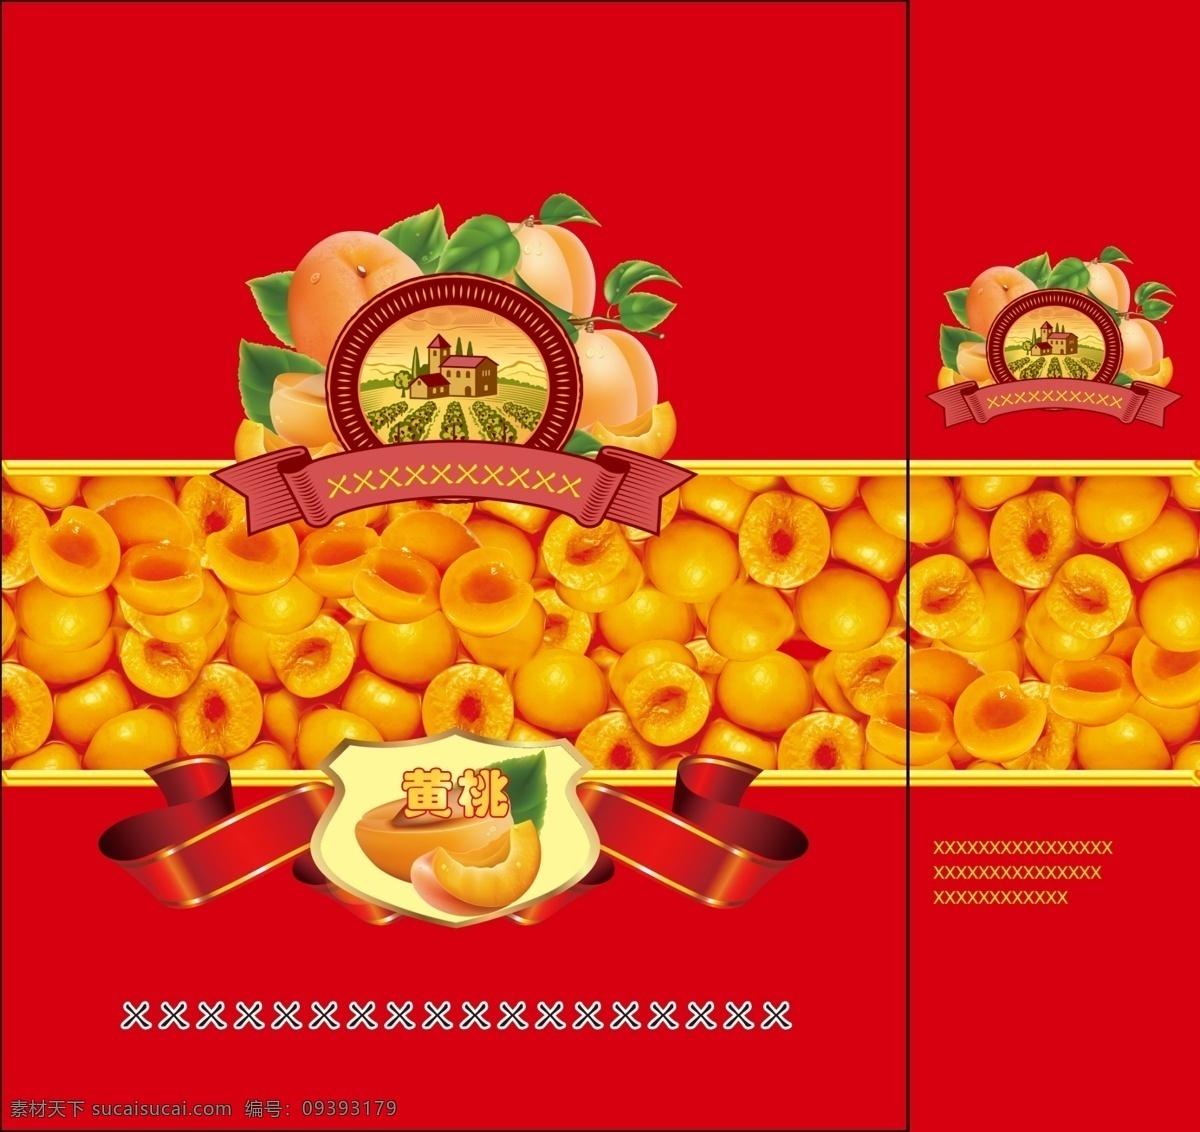 黄桃手提袋 包装设计 罐头 广告设计模板 黄桃 精品 食品 水果 包装 模板下载 黄桃罐头包装 源文件 红色